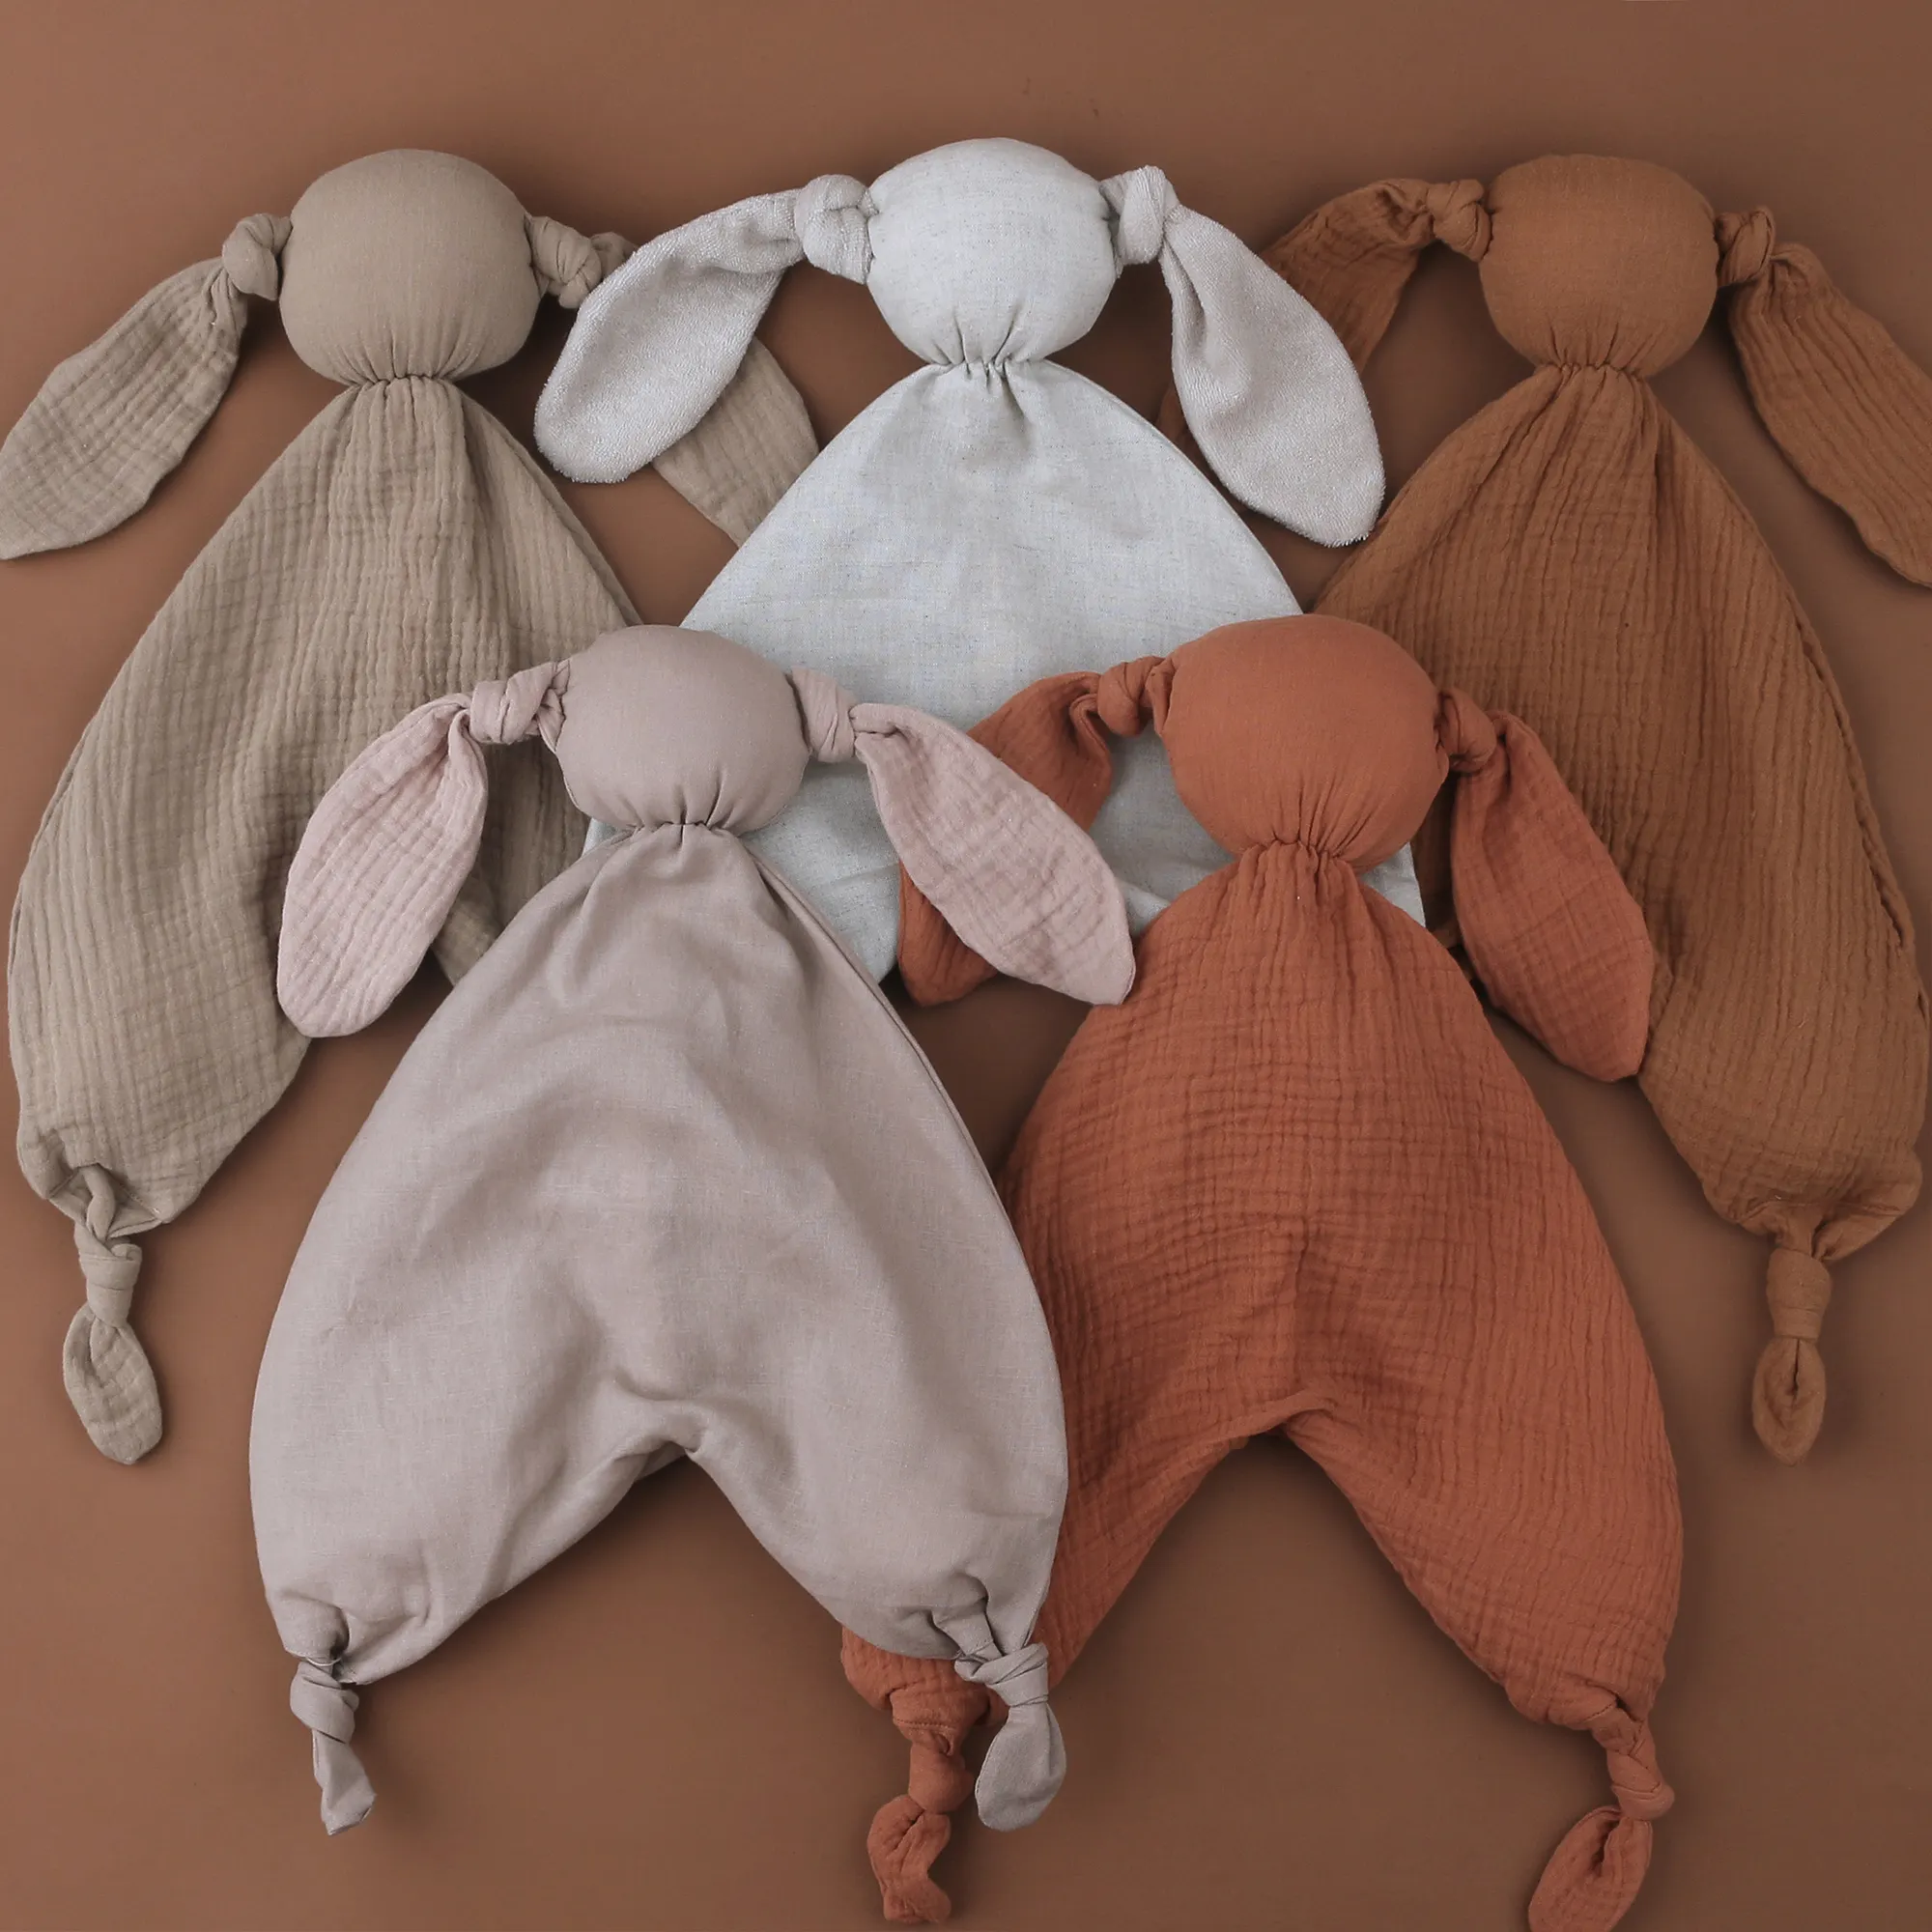 الجملة جميل لينة 100% القطن العضوي خط الشاش أرنب الرضع المعزي لعب للطفل النوم بطانية أمان للأطفال